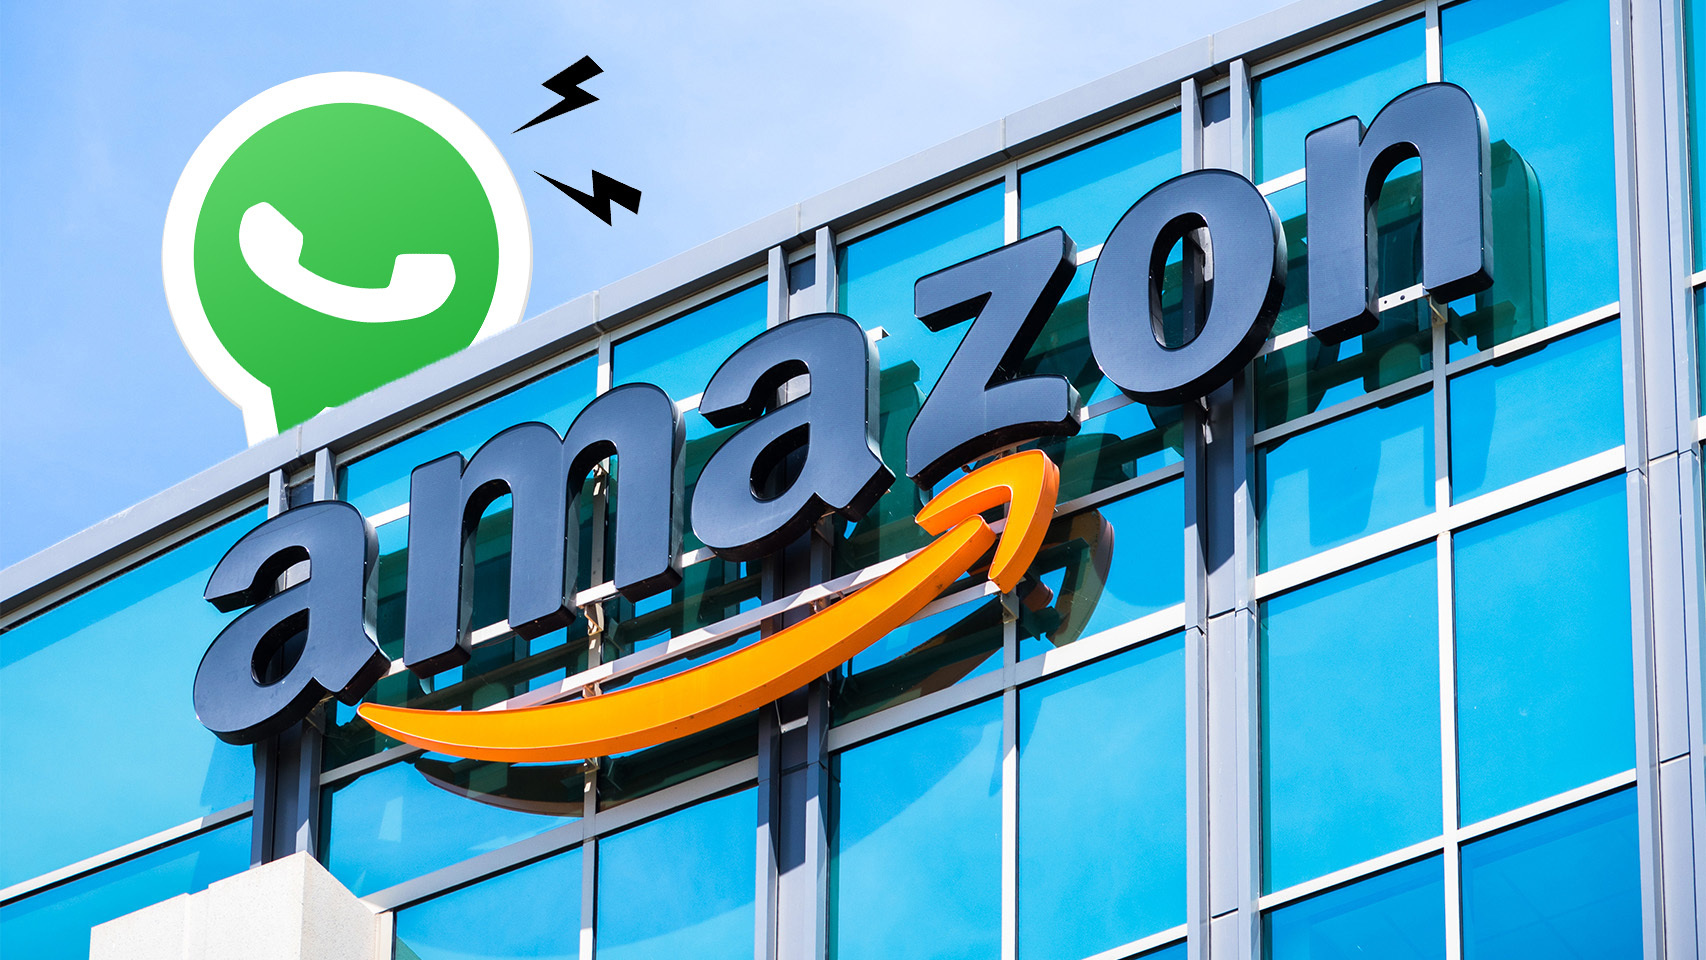 Logo de WhatsApp sobre las oficinas de Amazon.